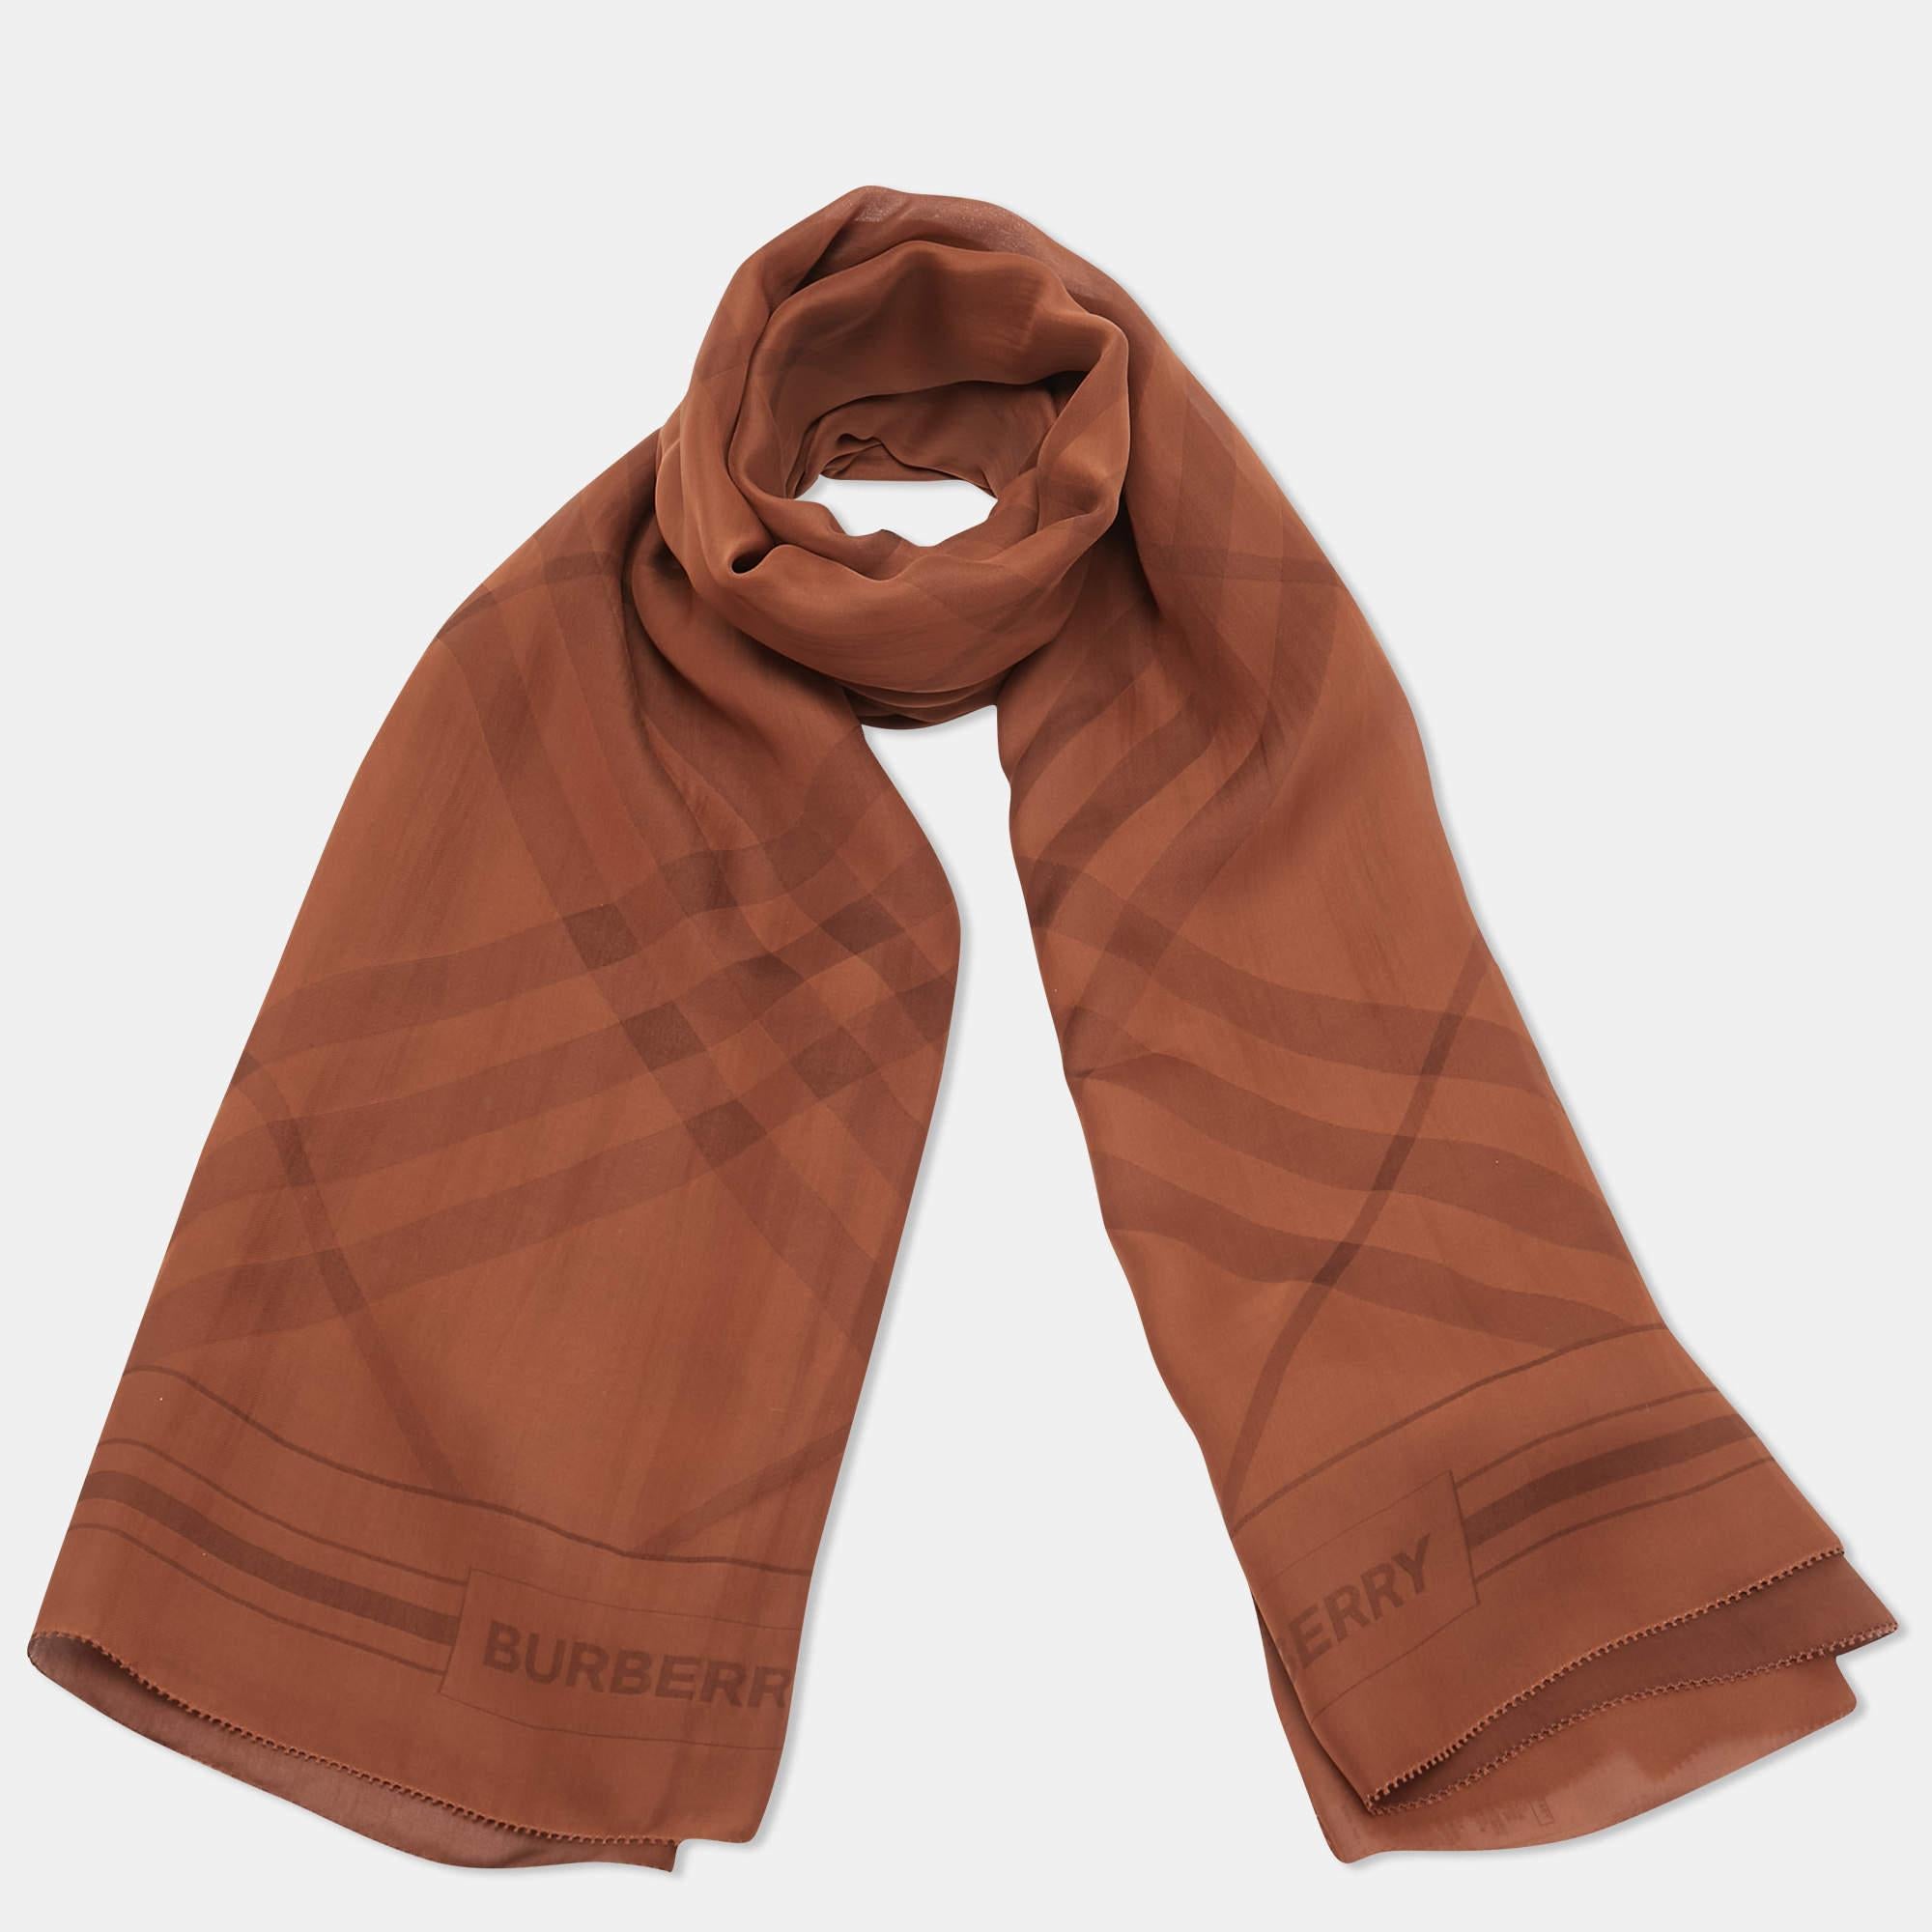 Dieser hübsche Schal ist ein tolles Accessoire für lässige Outfits und Statement-Taschen. Dieser Schal von Burberry zeichnet sich durch ein interessantes Design aus. Es ist aus glattem Stoff geschnitten und wertet alle Ihre Looks auf.

Enthält: